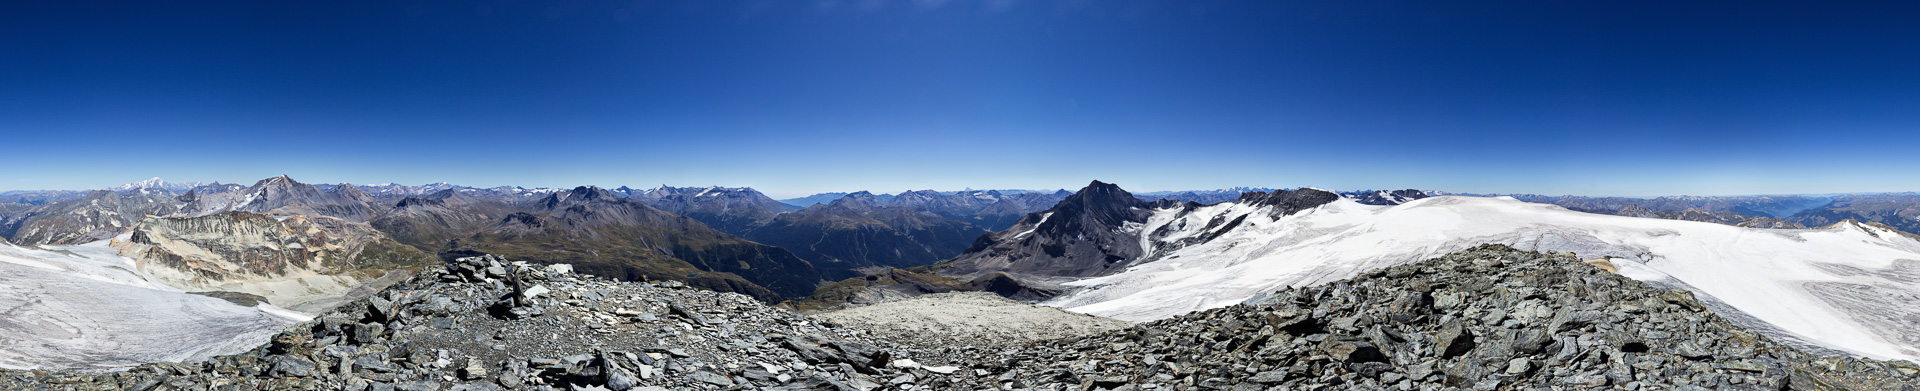 Umfassendes Gipfelpanorama von Mont Blanc über Walliser Alpen zu den Bergen der Vanoise mit Dent Parrachée und der Dauphiné.